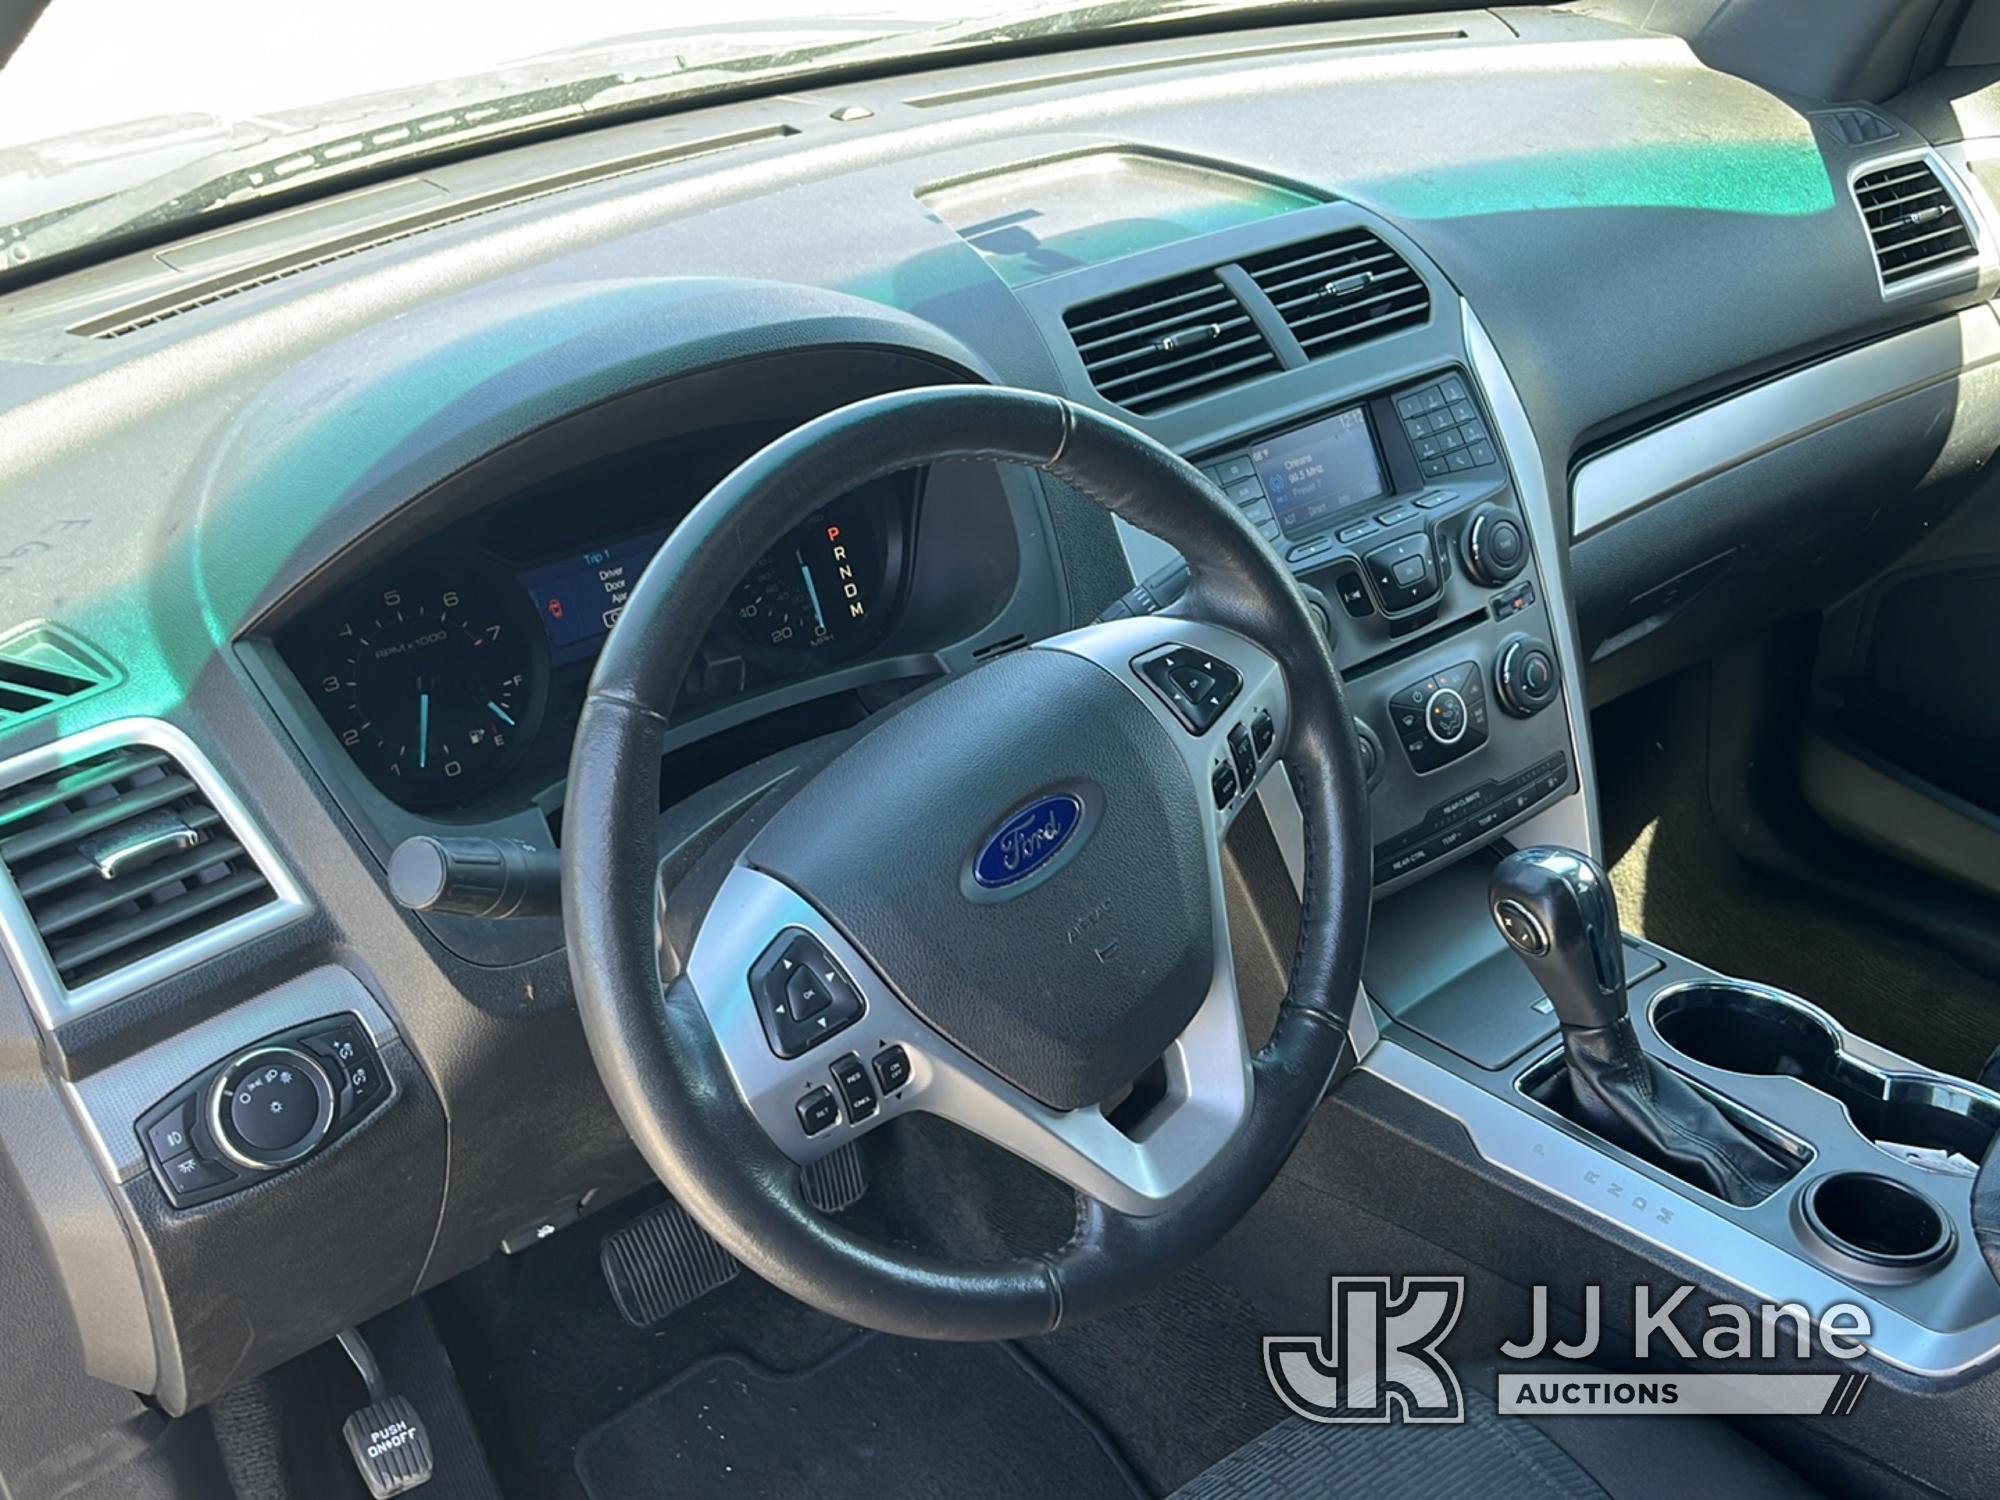 (Covington, LA) 2015 Ford Explorer XLT 4-Door Sport Utility Vehicle Runs & Moves) (Broken Running Li